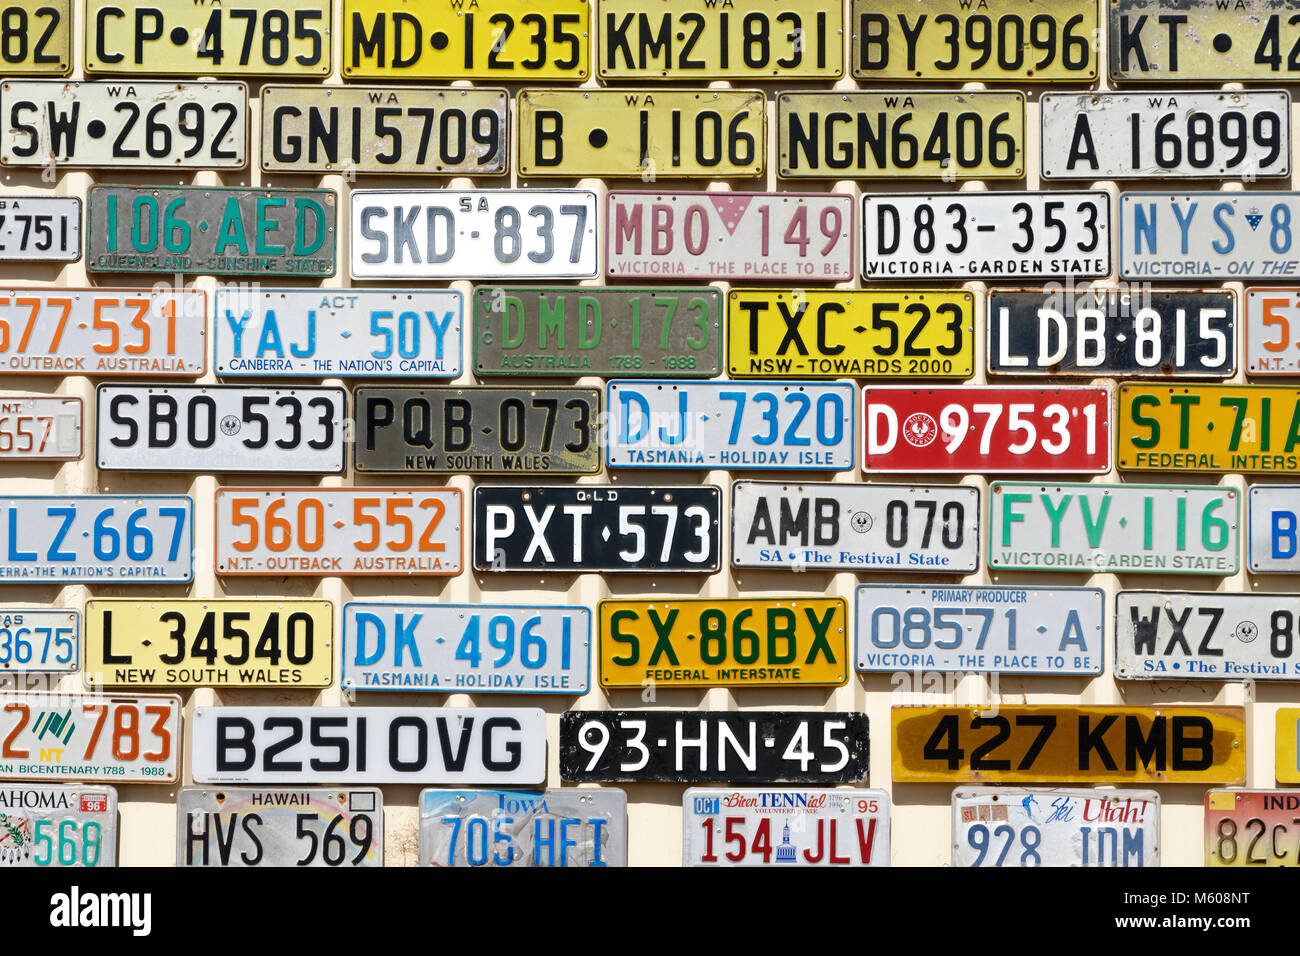 Sammlung von Kfz-Kennzeichen auf der Wand angezeigt, Australien Stockfoto